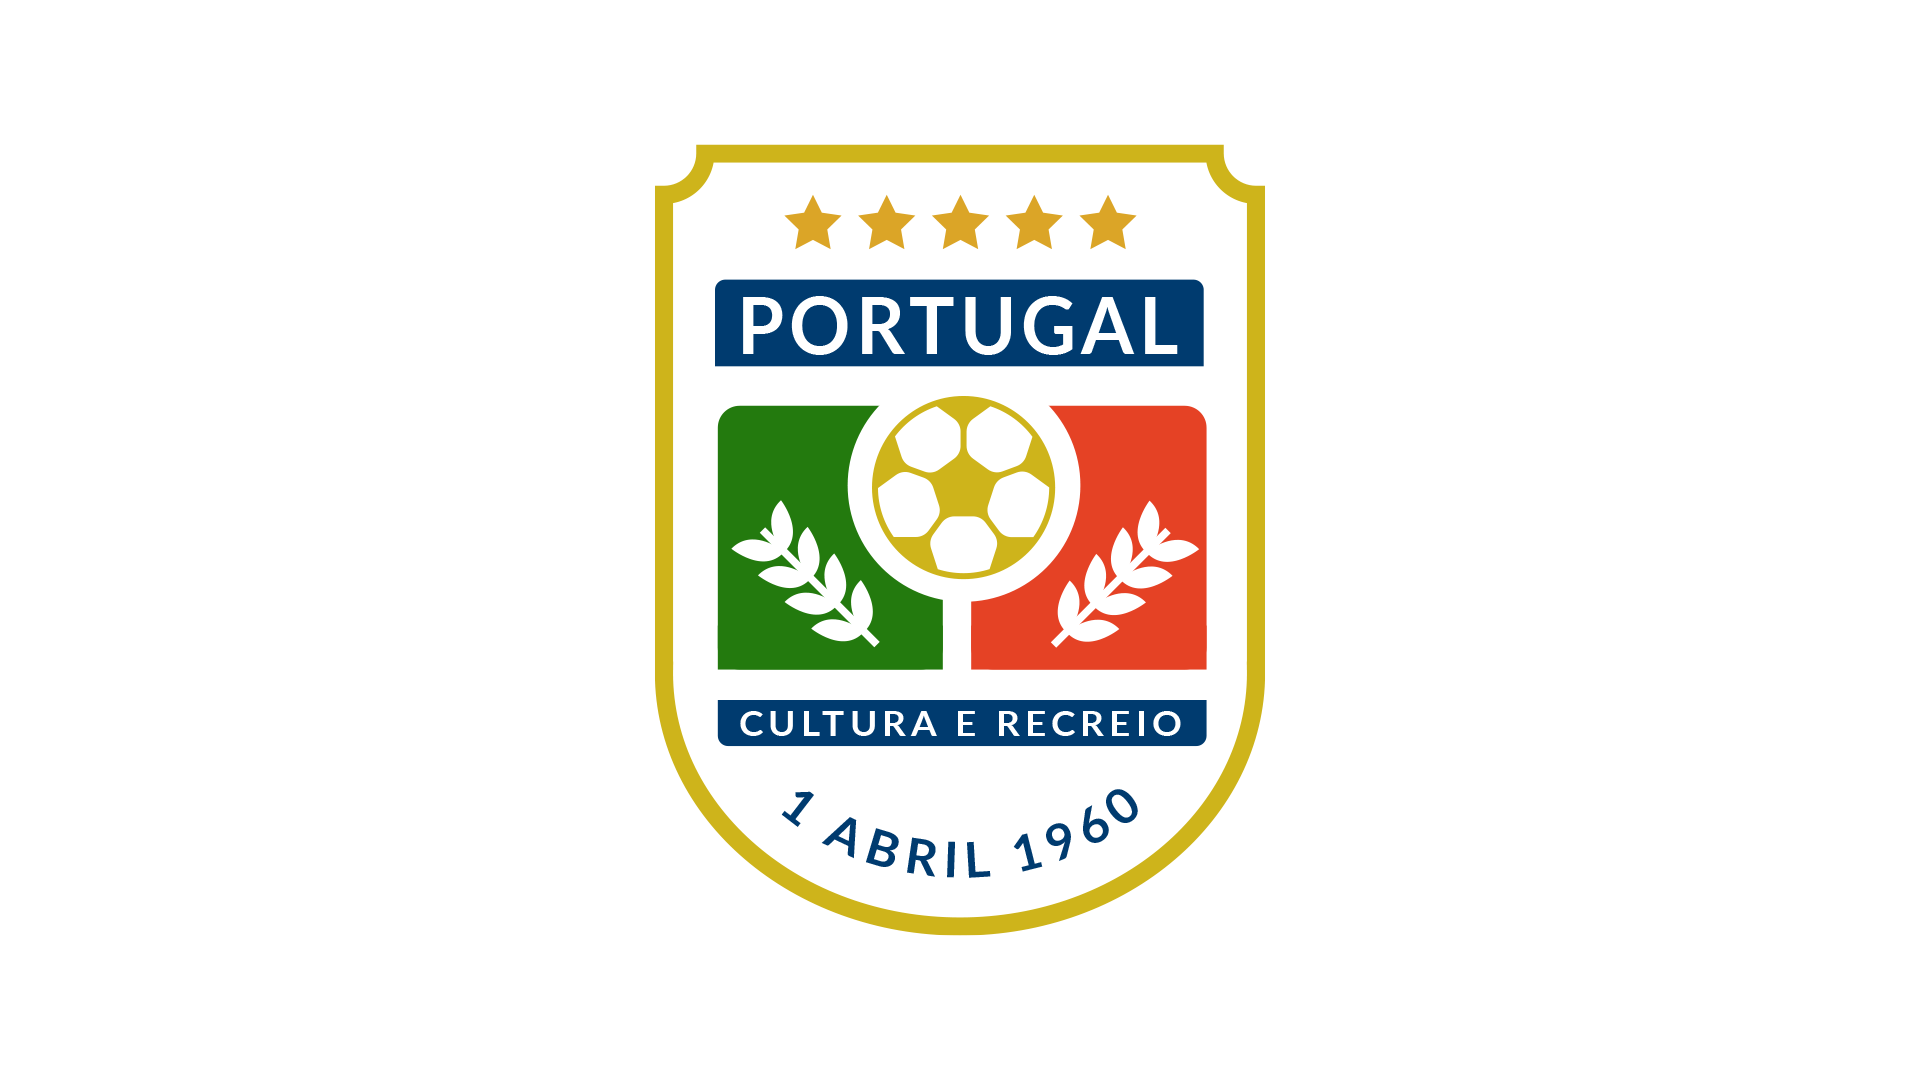 Portugal Cultura e recreio